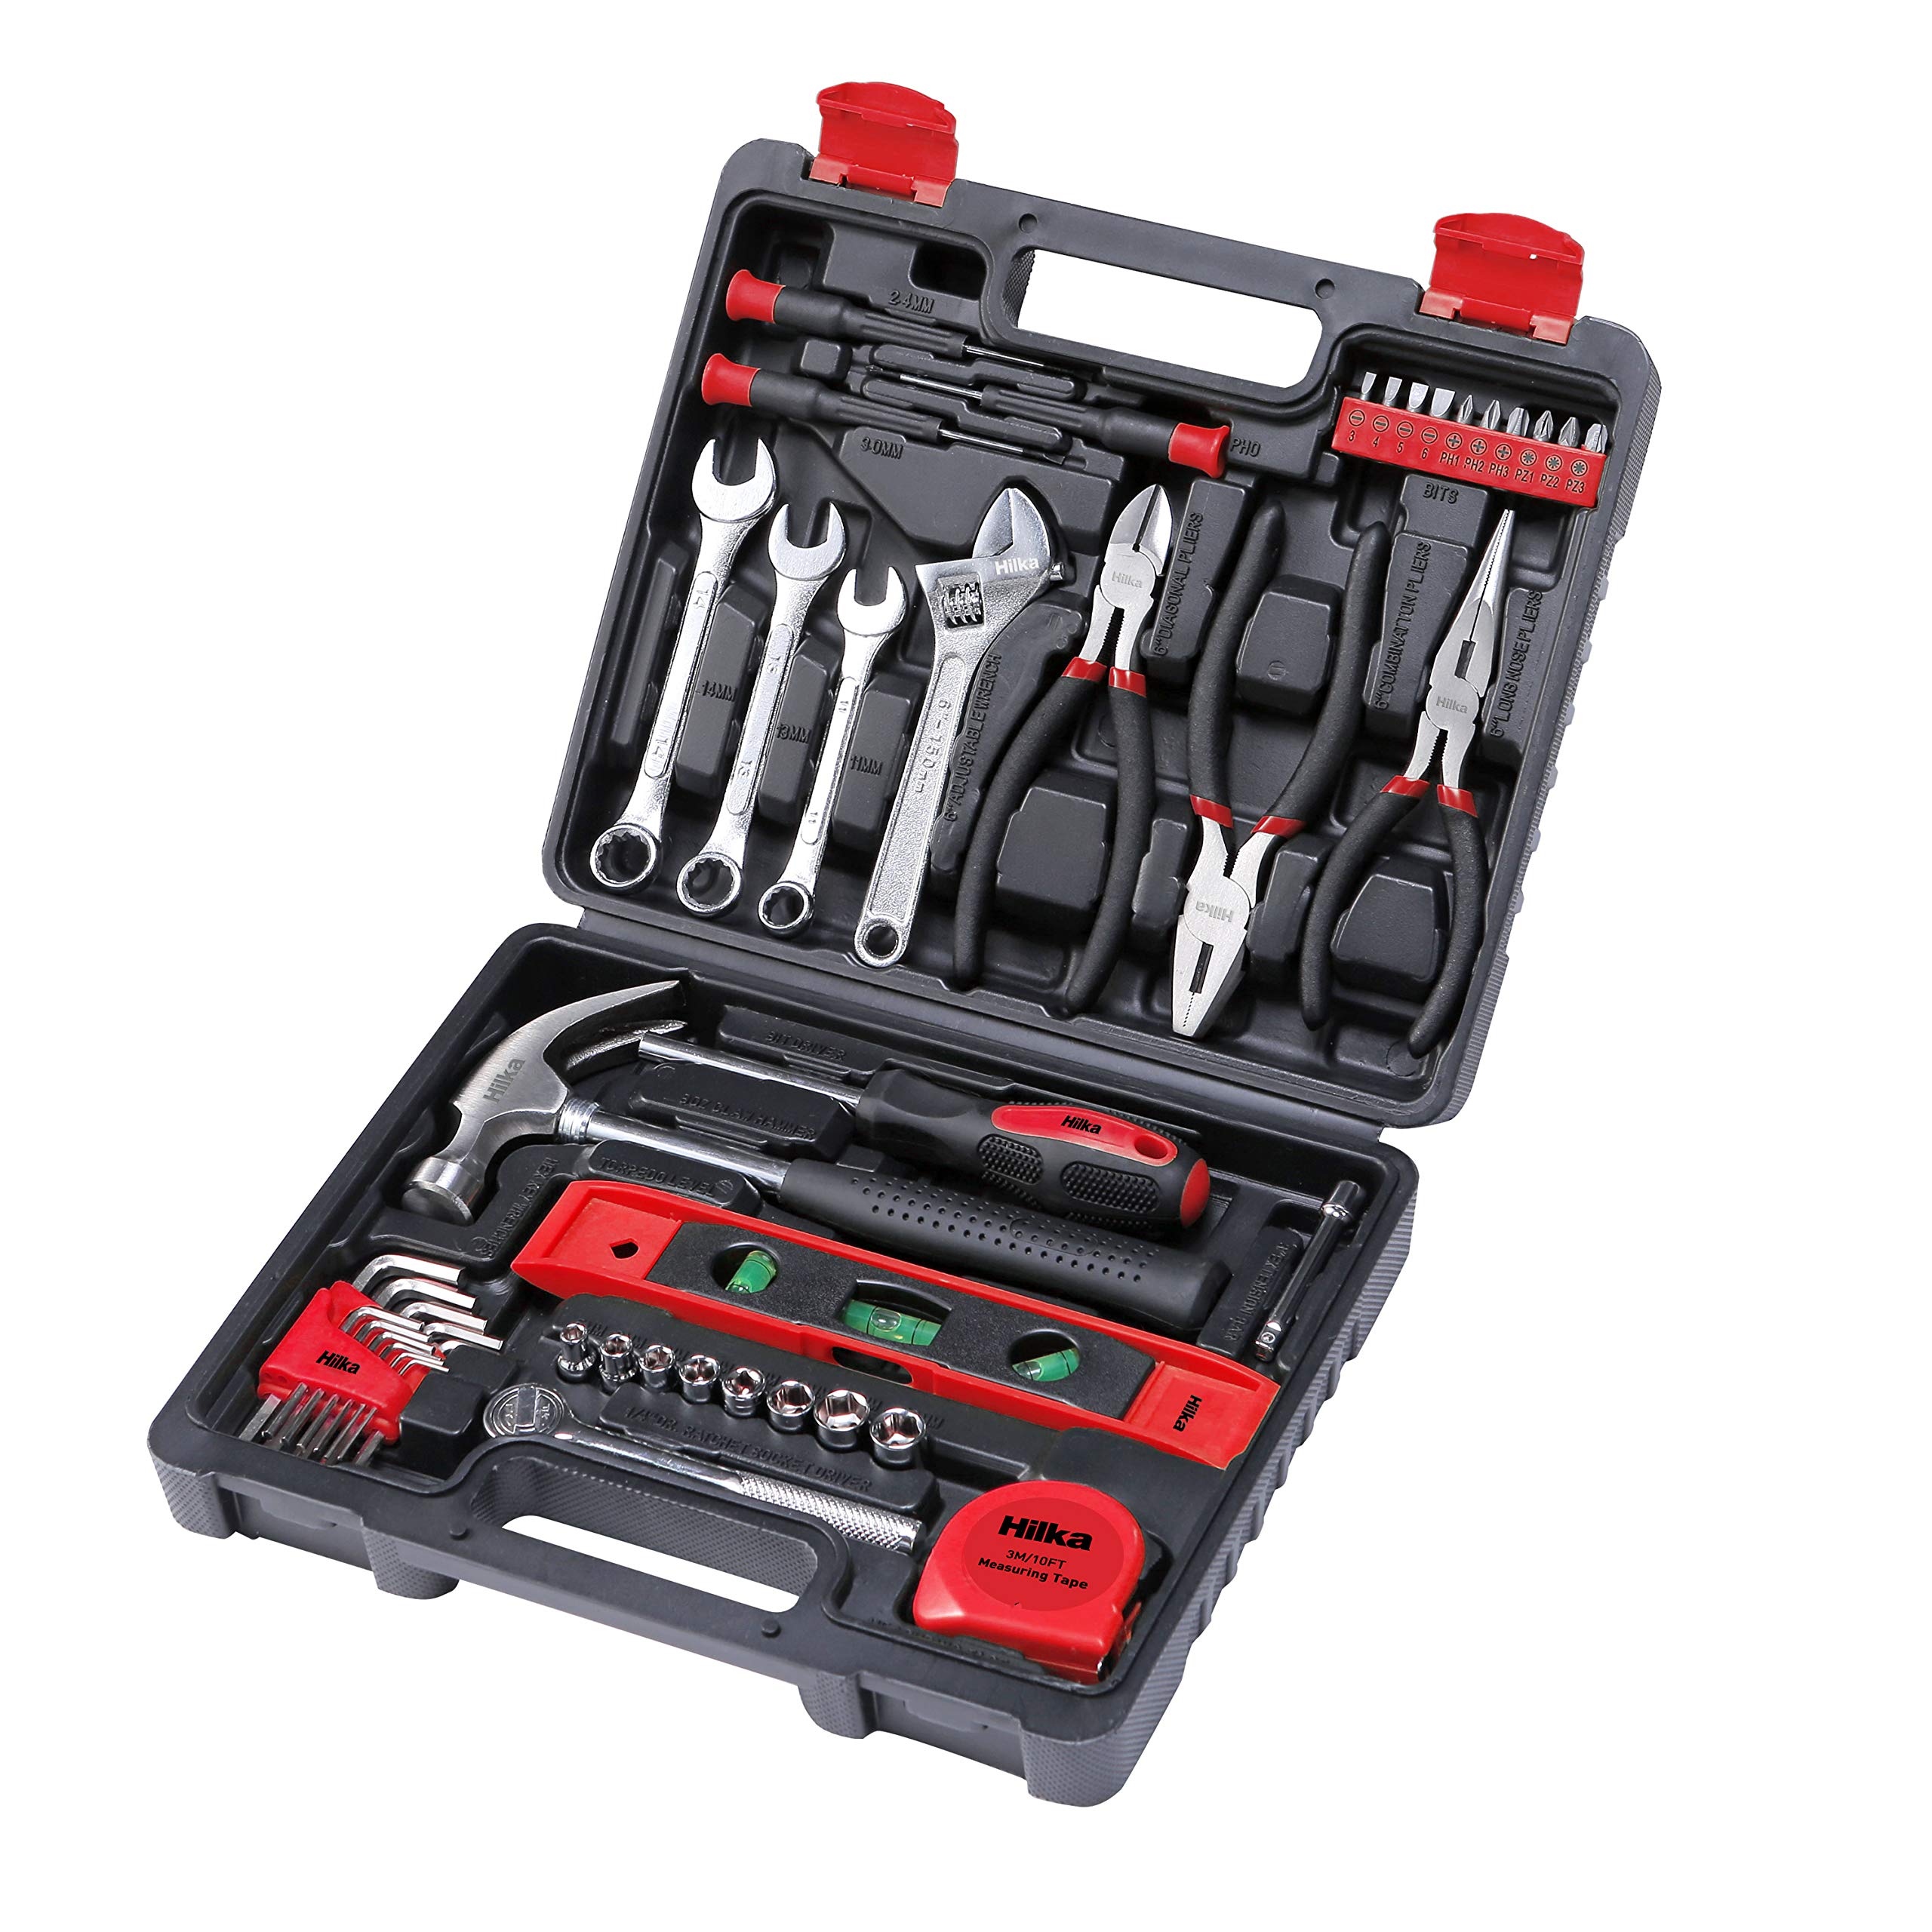 Hilka Tools 78730045 Pro Craft Werkzeug-Set, 45-teilig, Schwarz